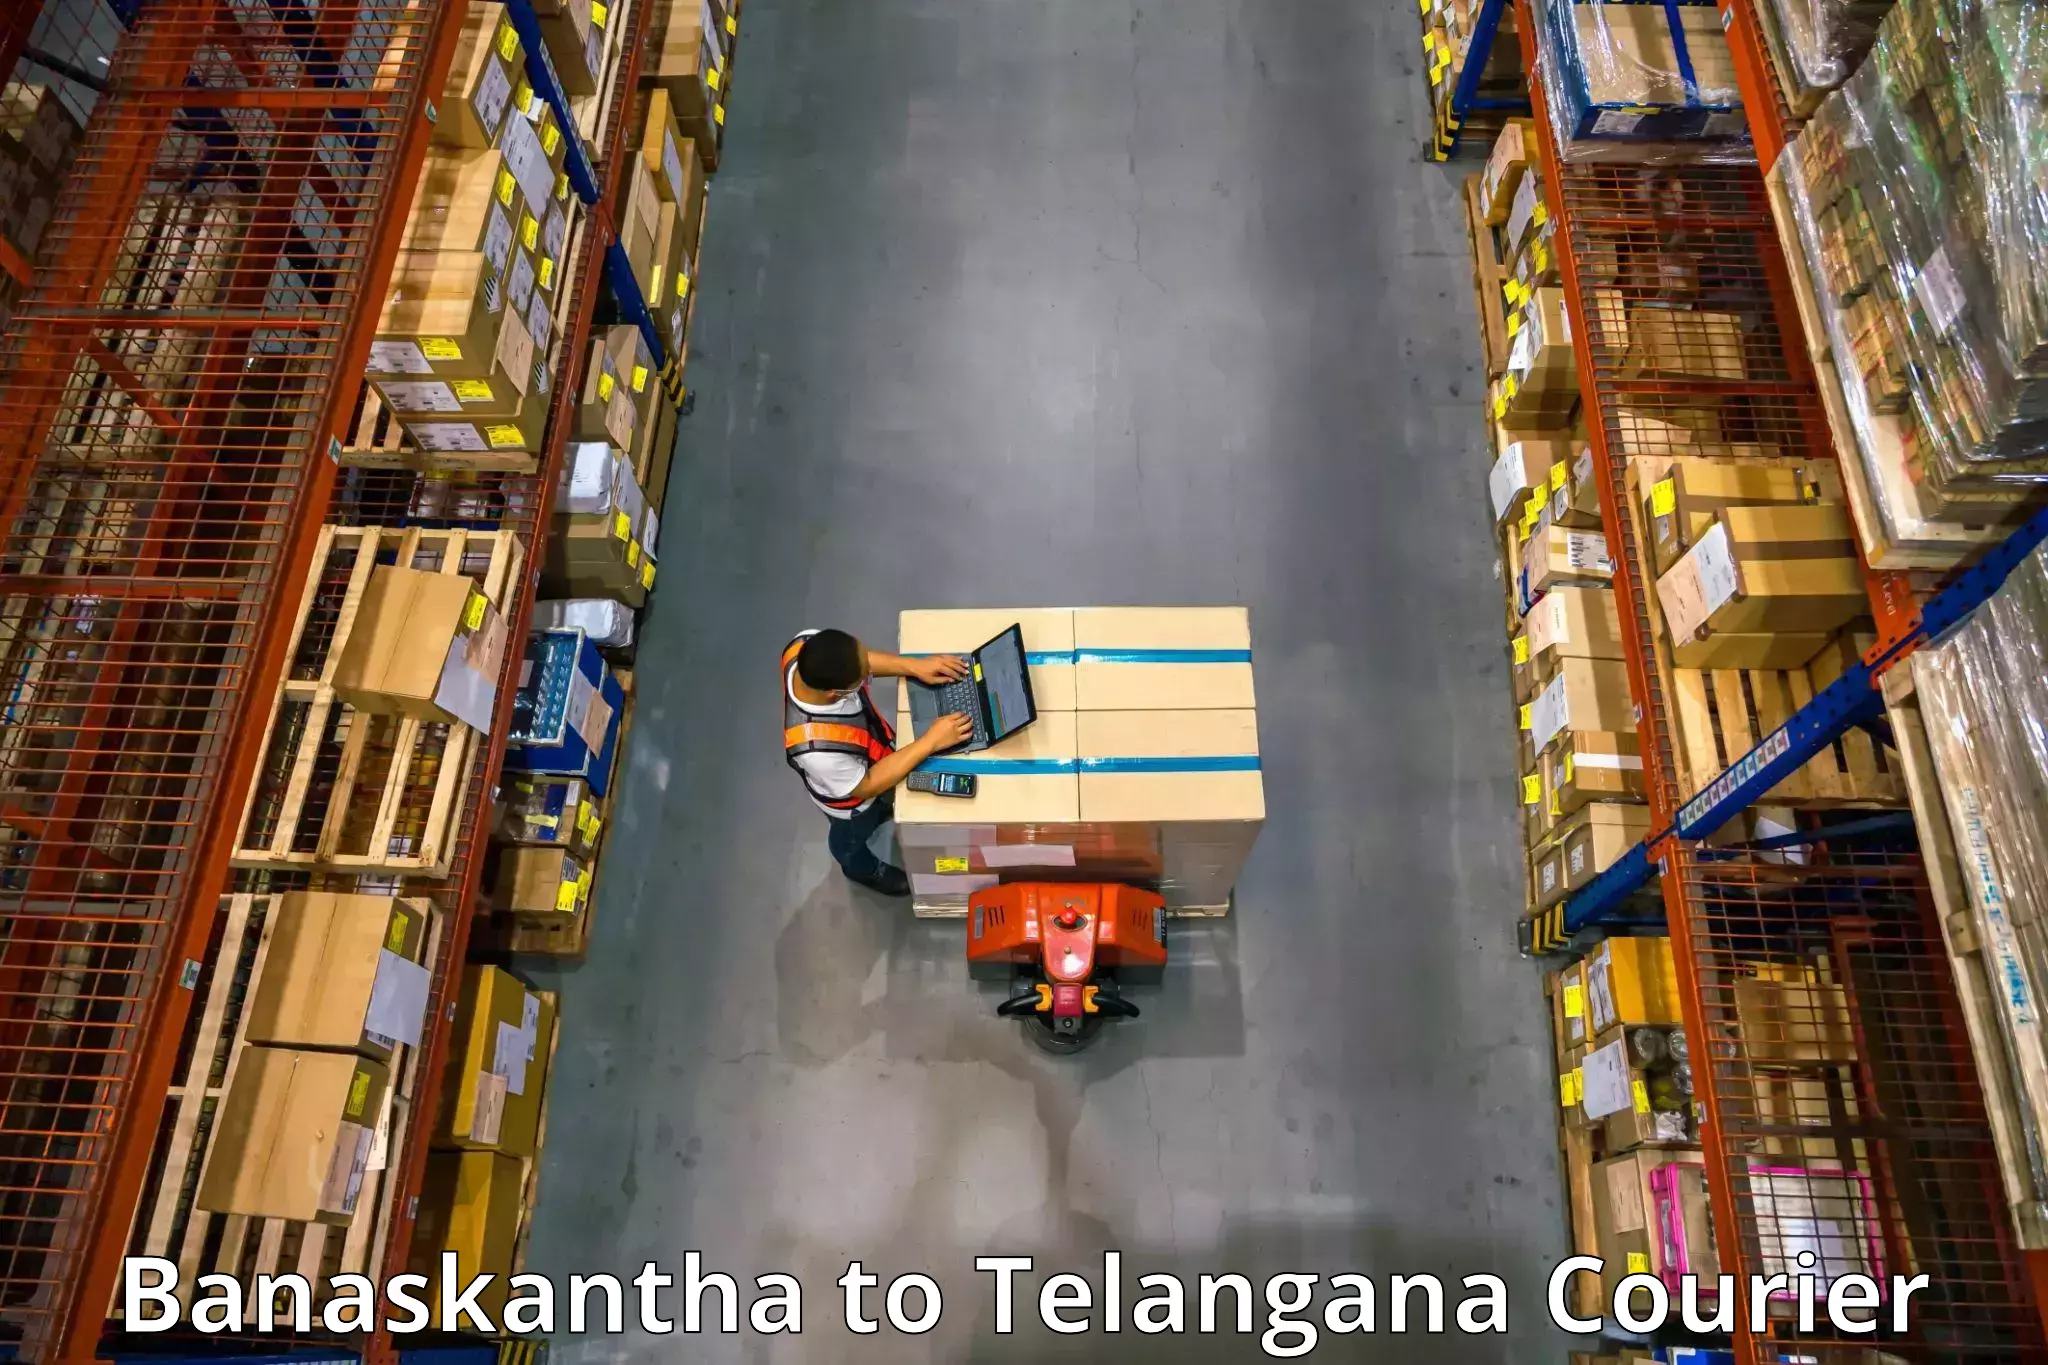 Furniture transport and storage in Banaskantha to Kosgi